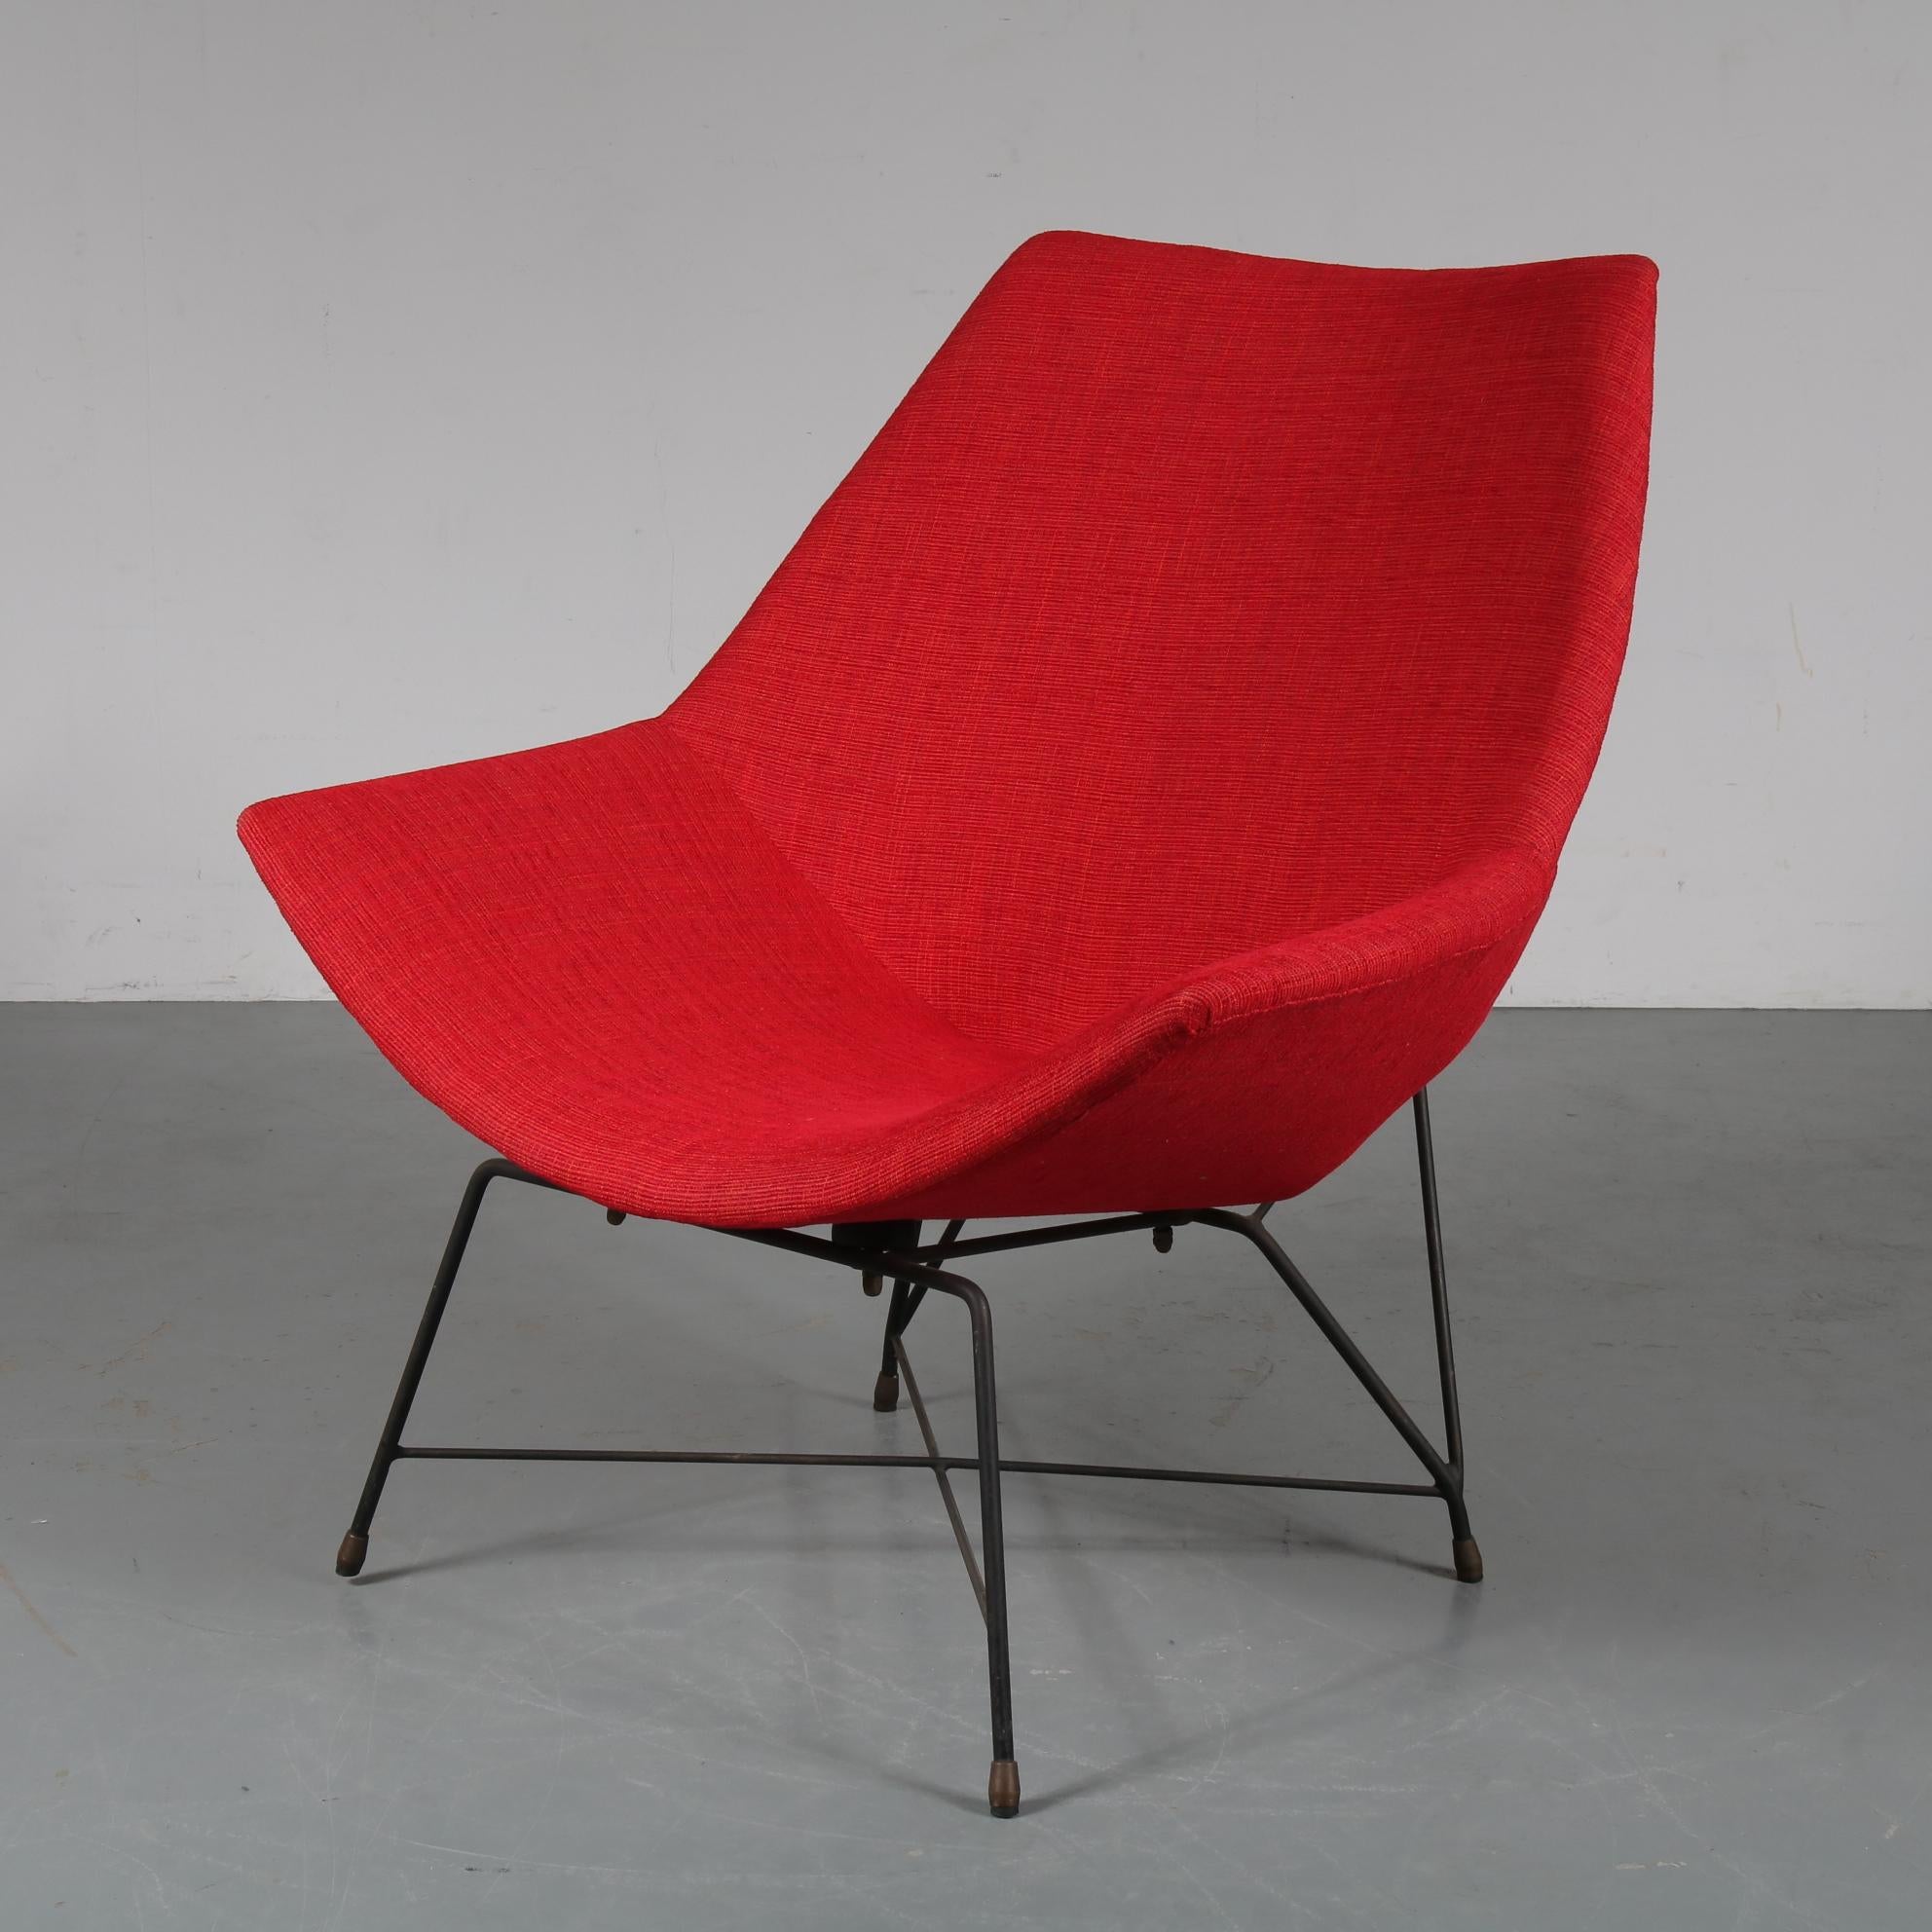 Un étonnant fauteuil d'Augusto Bozzi, fabriqué par Saporiti en Italie en 1954.

Il s'agit d'une pièce très rare et très recherchée, le modèle est nommé 